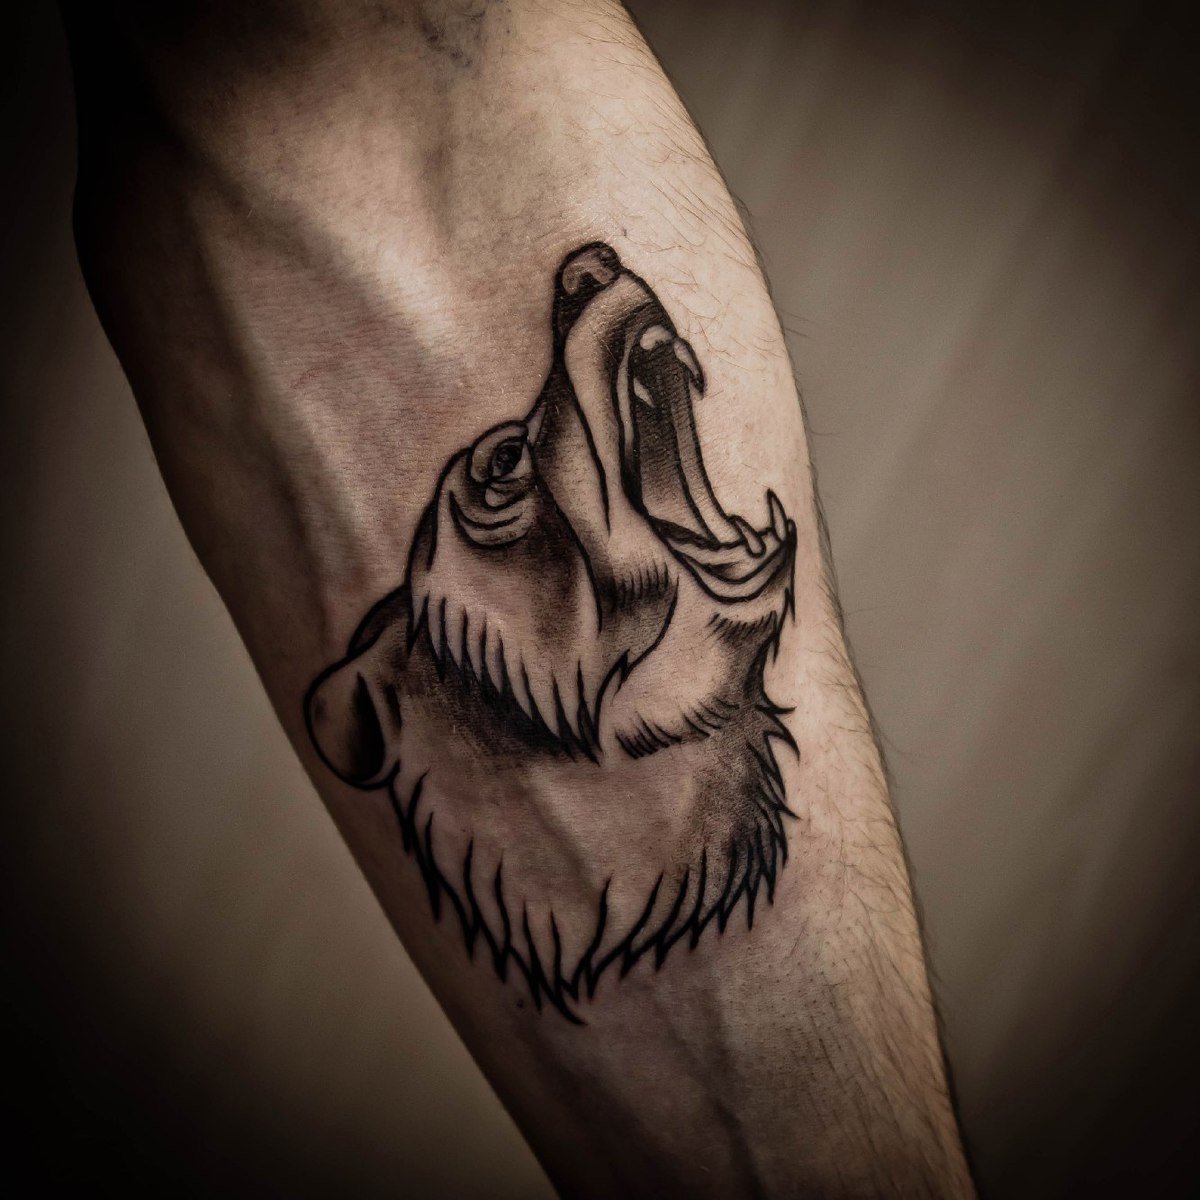 Tatuajes de animales para mujeres y hombres